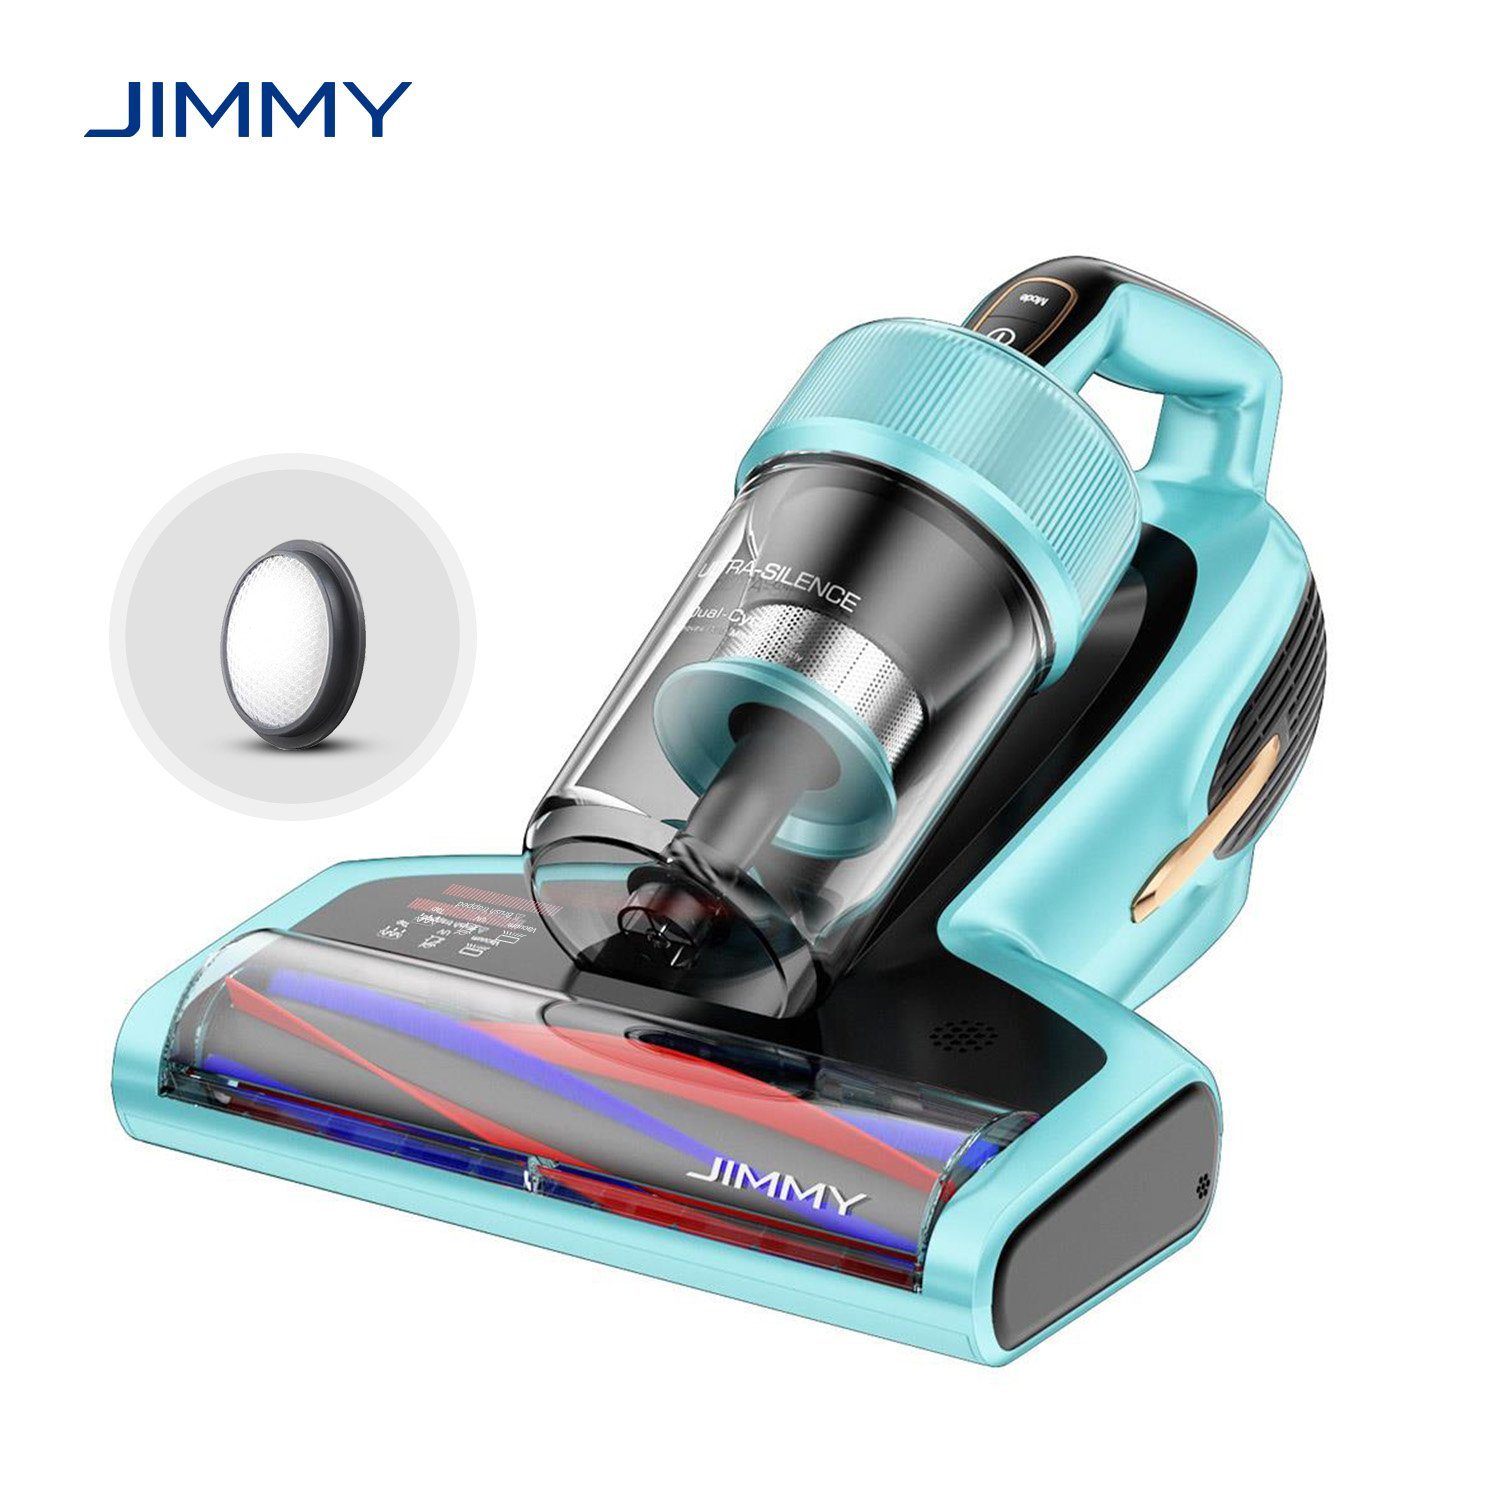 Jimmy Matratzenreinigungsgerät BX7 Pro Milbenstaubsauger Handstaubsauger,  700,00 W, mit Beutel, UV-C Licht, Hausstaubmilbensensor,  Ultraschallfunktion, Leistungsstarker 700-W-Hochpräzisionsmotor